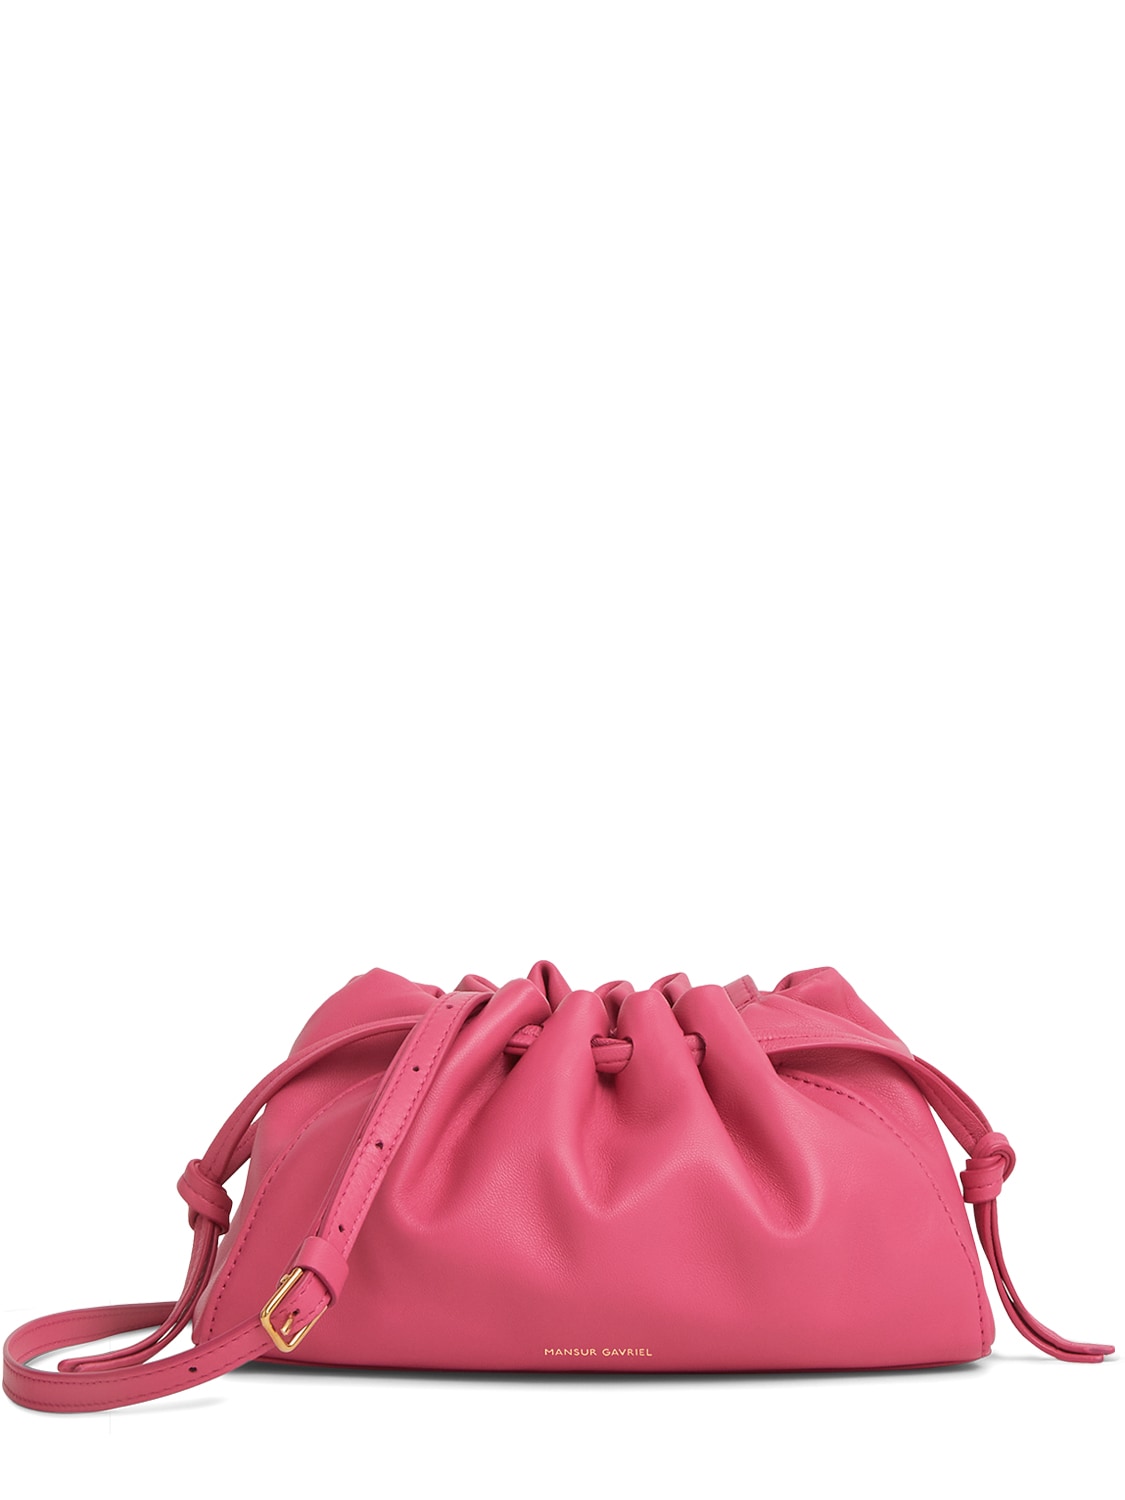 Image of Mini Bloombag Leather Shoulder Bag